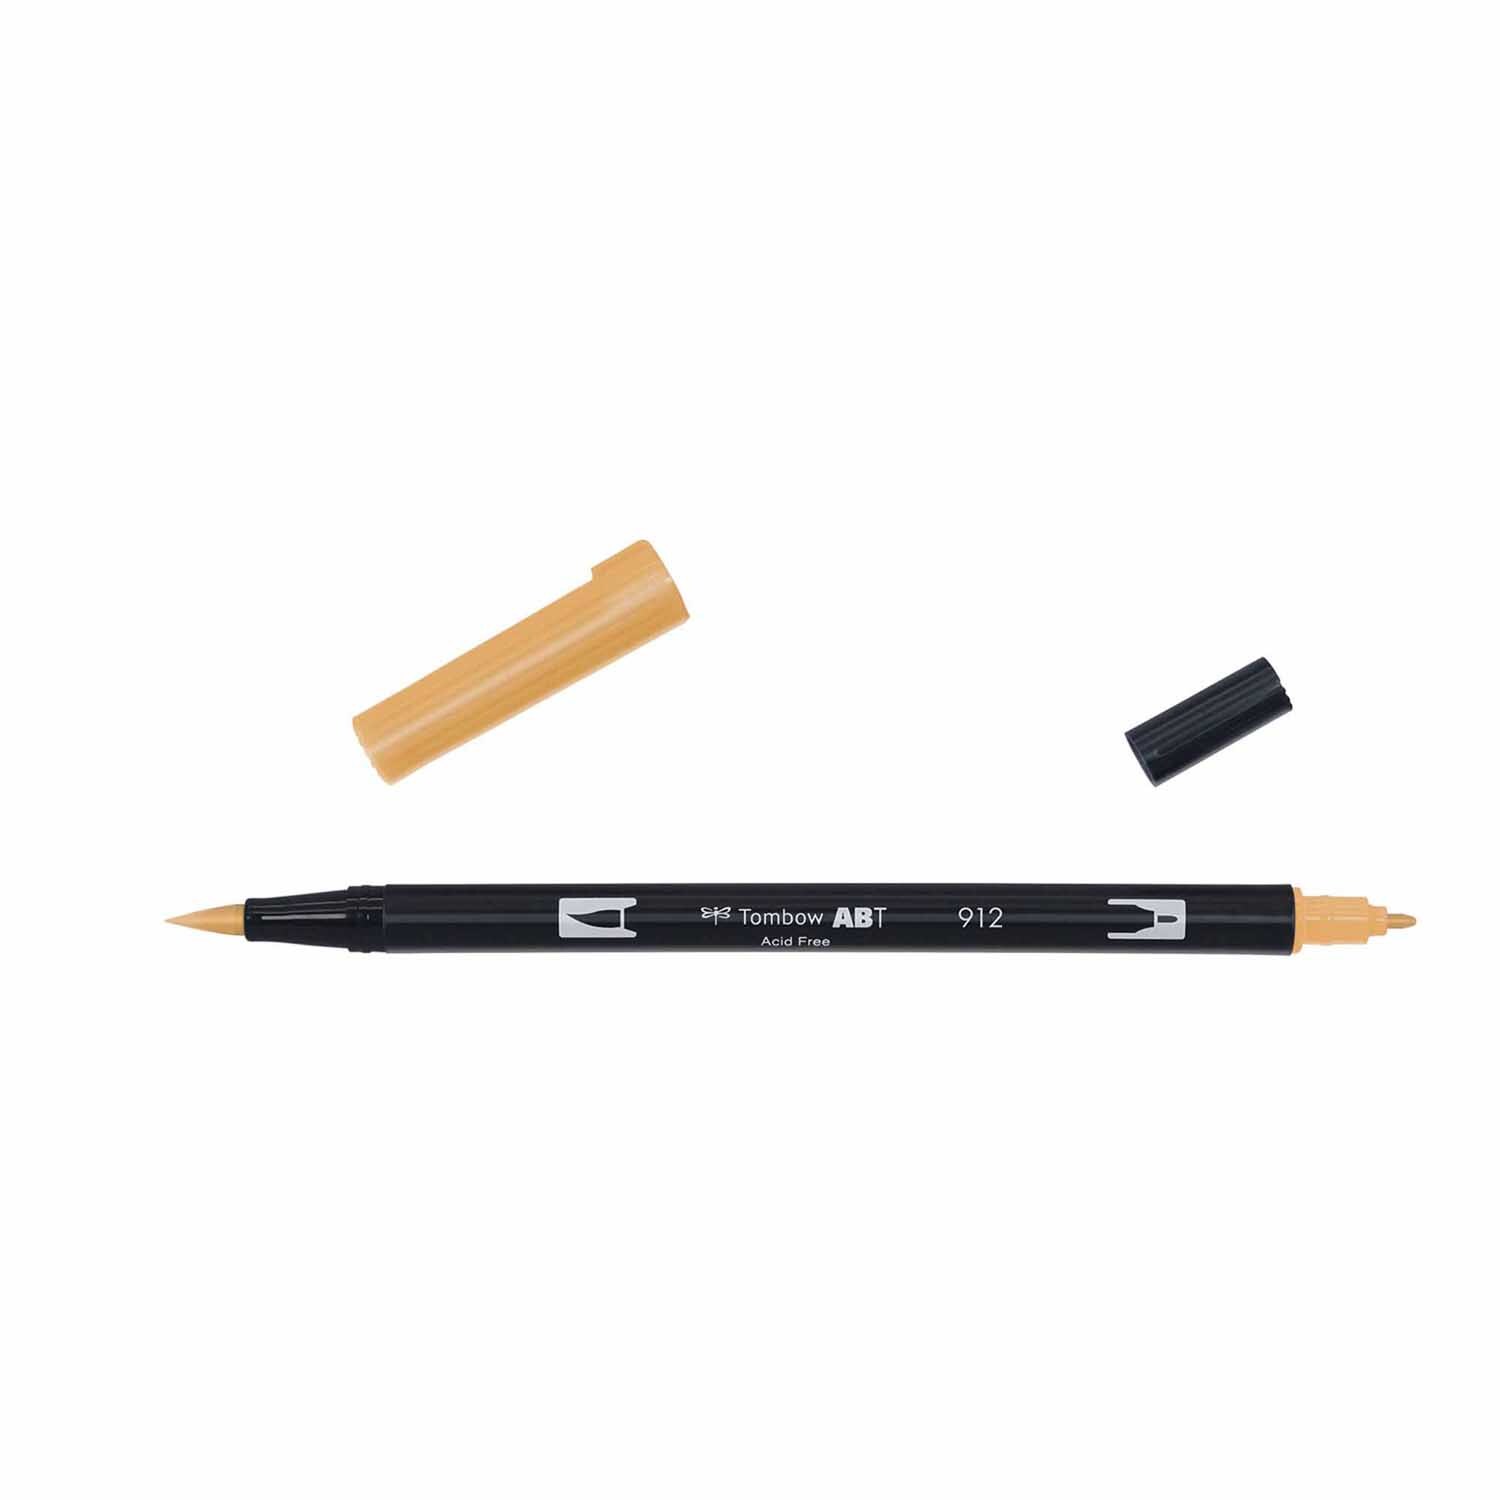 ABT Dual Brush Pen